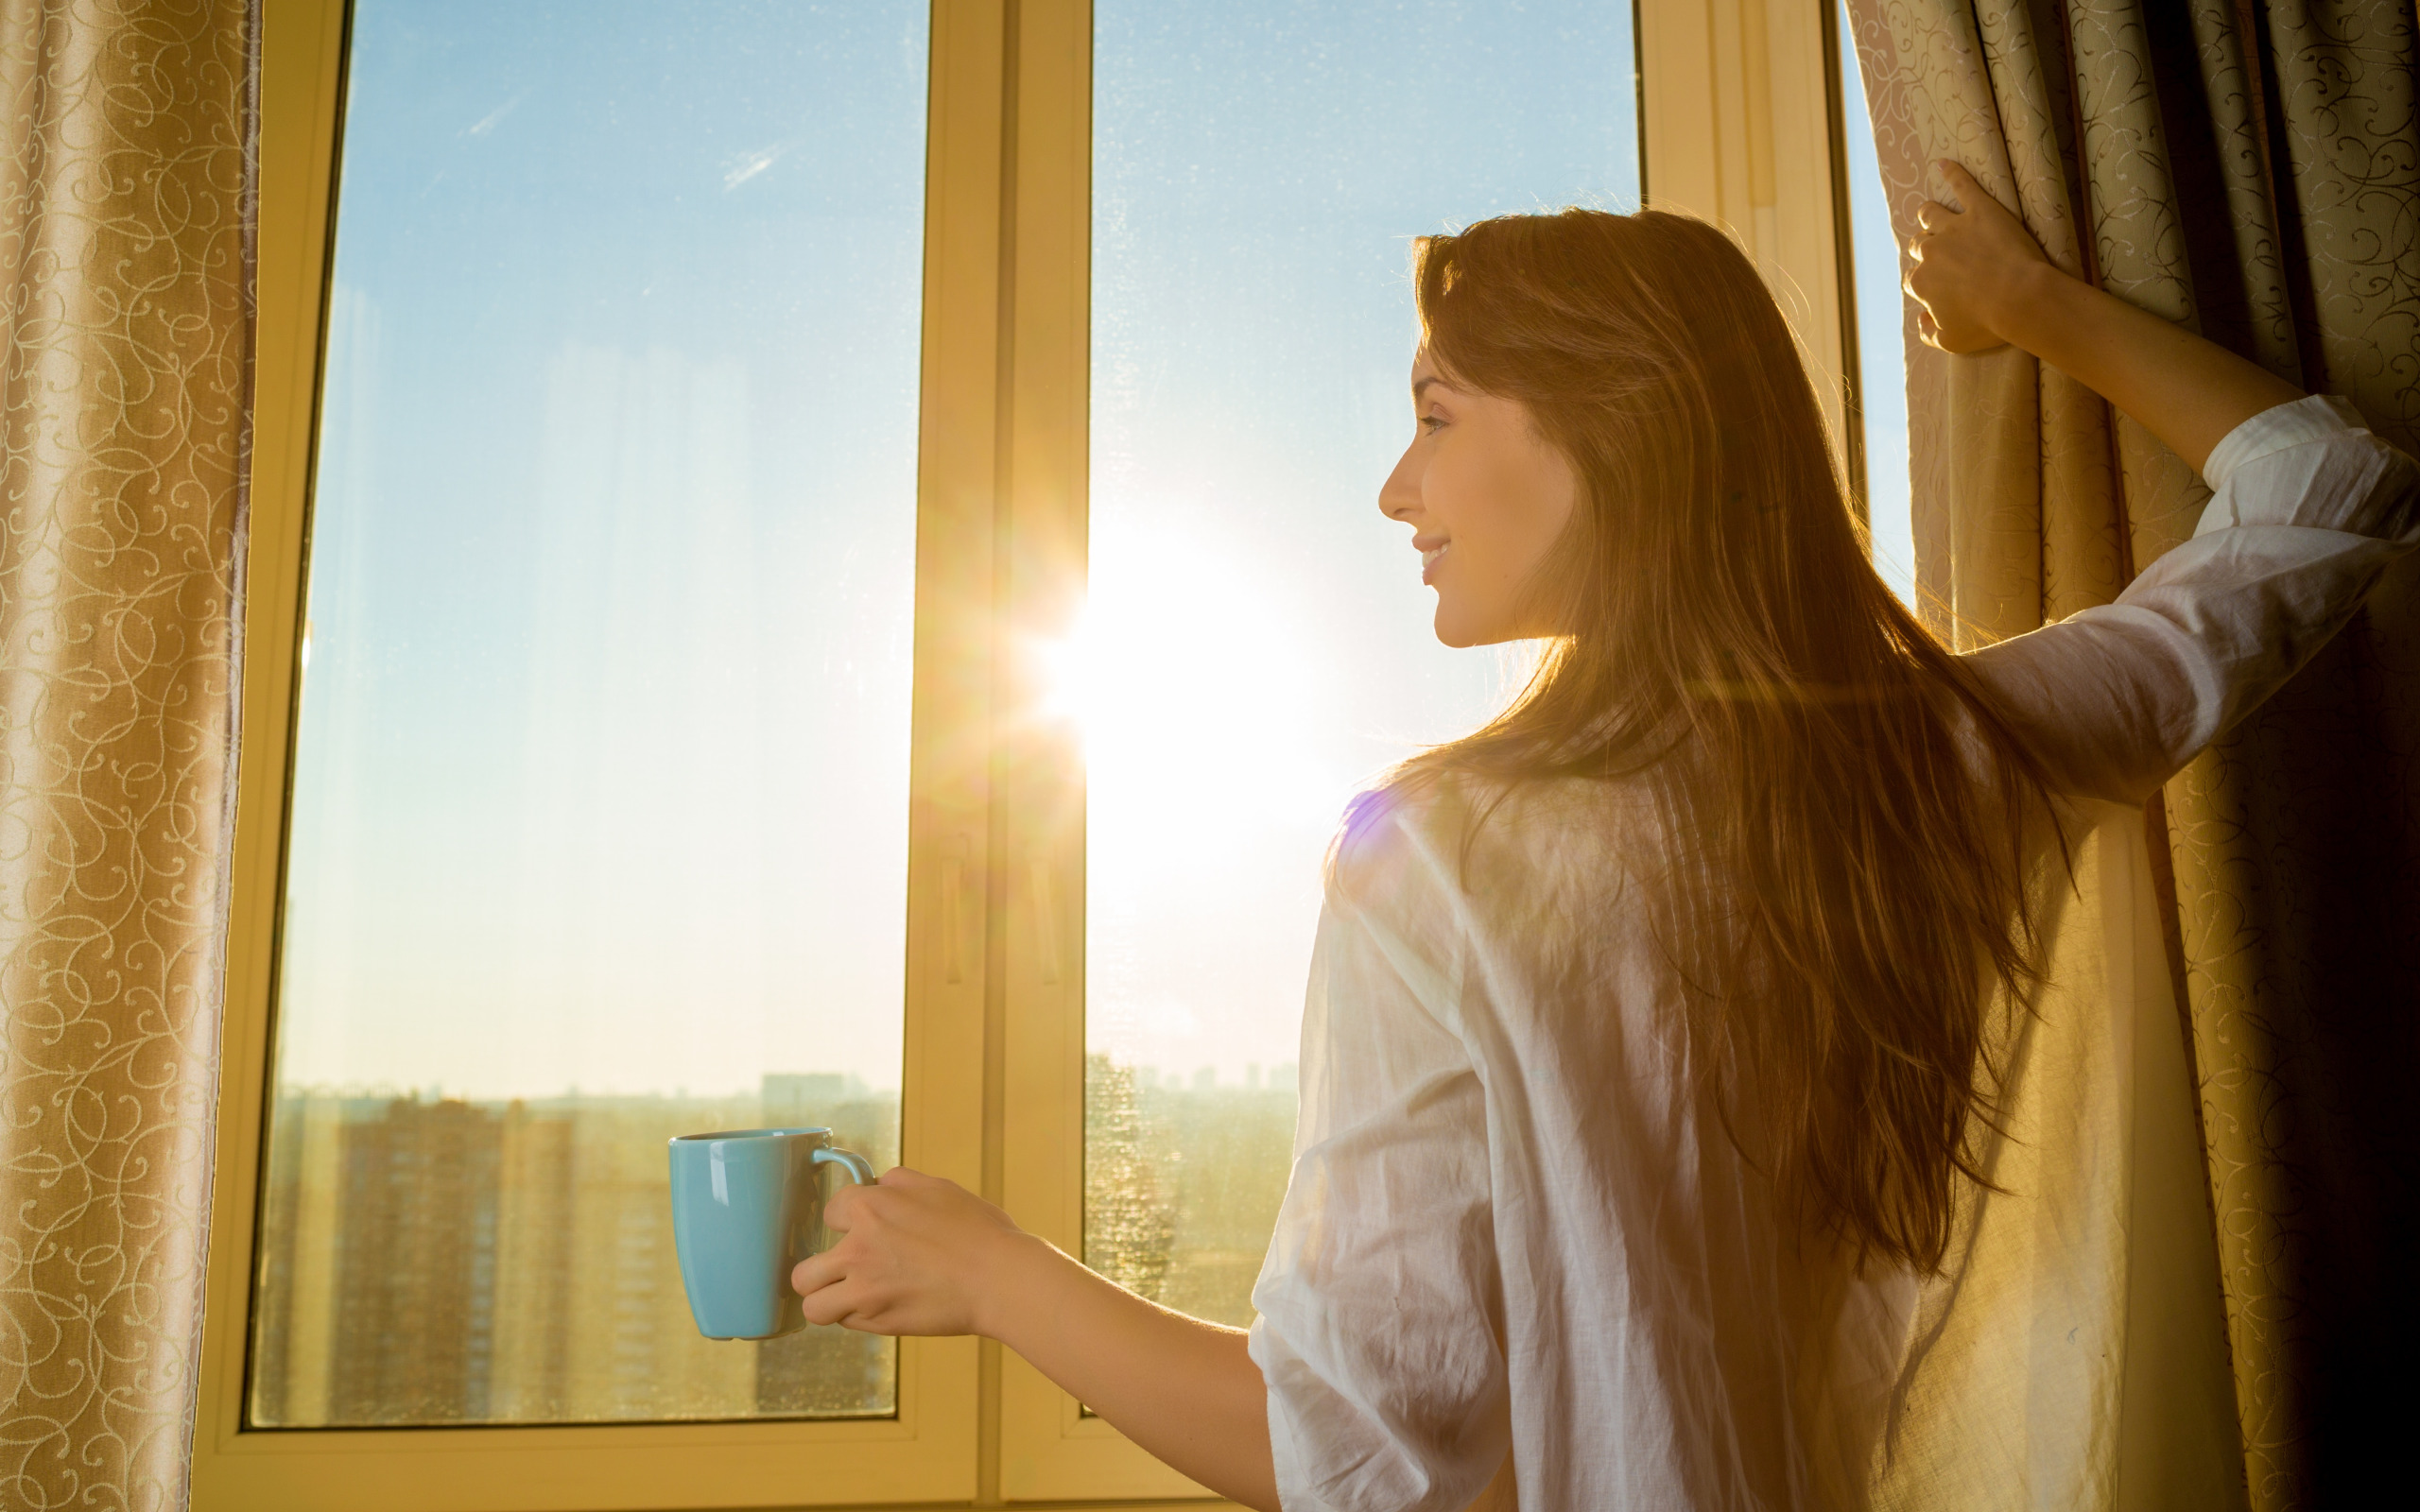 Каждый день наслаждаюсь рисунком окон. Девушка у окна. Она девушка. Солнечное утро в окне. Женщина возле окна.